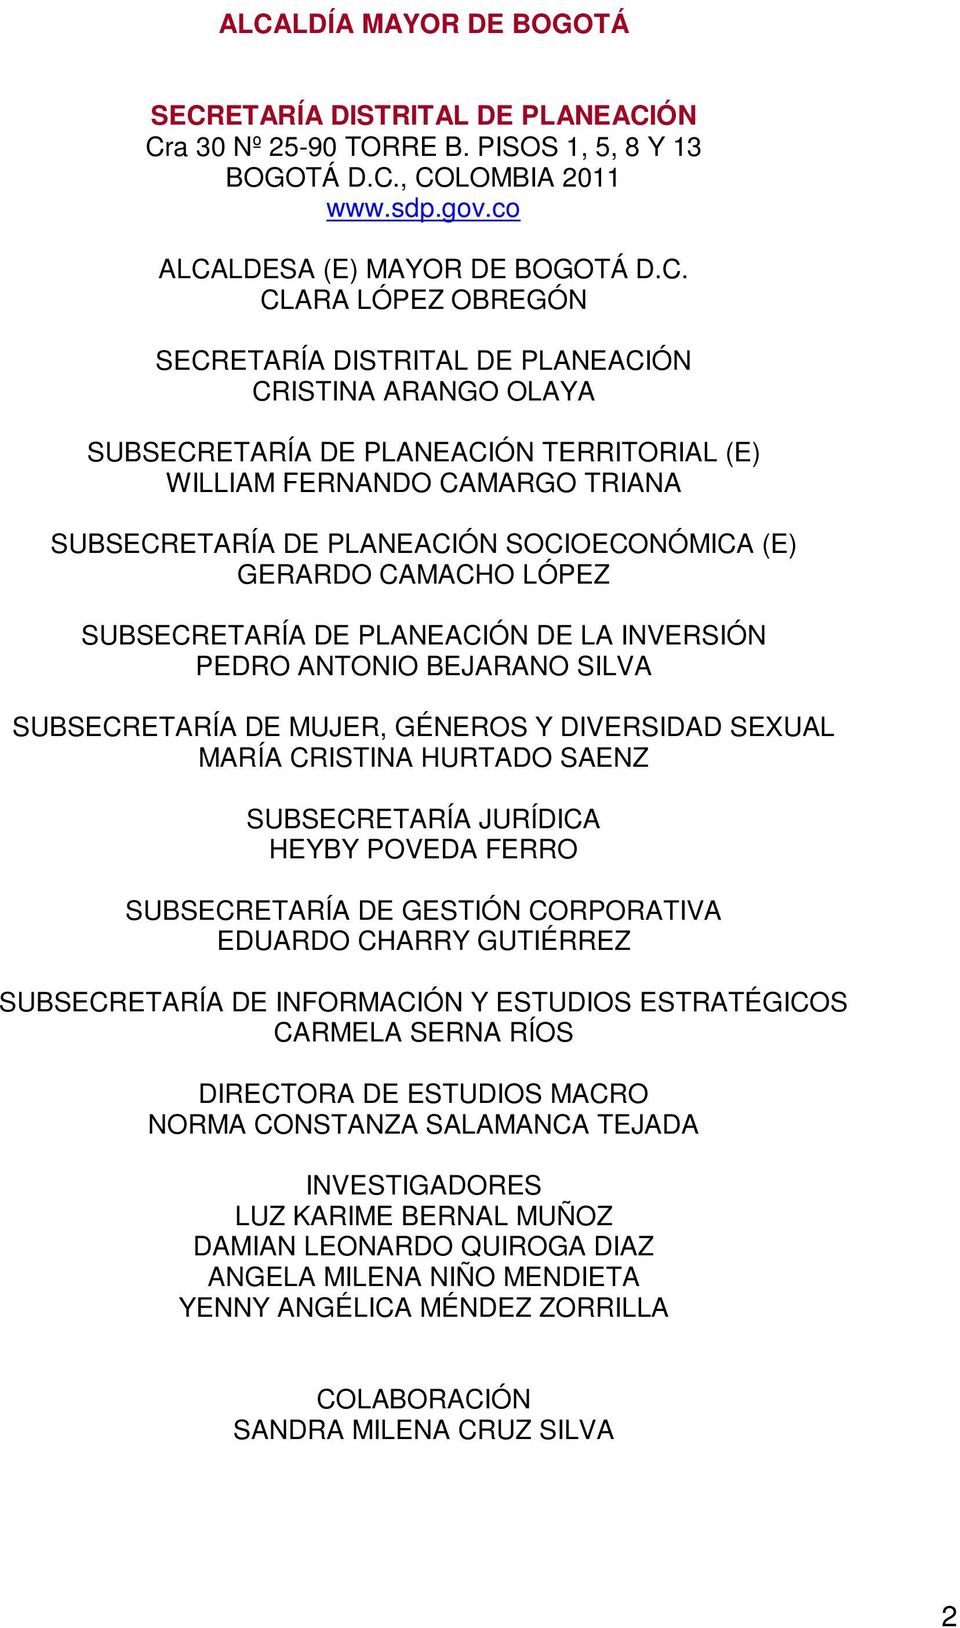 CAMACHO LÓPEZ SUBSECRETARÍA DE PLANEACIÓN DE LA INVERSIÓN PEDRO ANTONIO BEJARANO SILVA SUBSECRETARÍA DE MUJER, GÉNEROS Y DIVERSIDAD SEXUAL MARÍA CRISTINA HURTADO SAENZ SUBSECRETARÍA JURÍDICA HEYBY